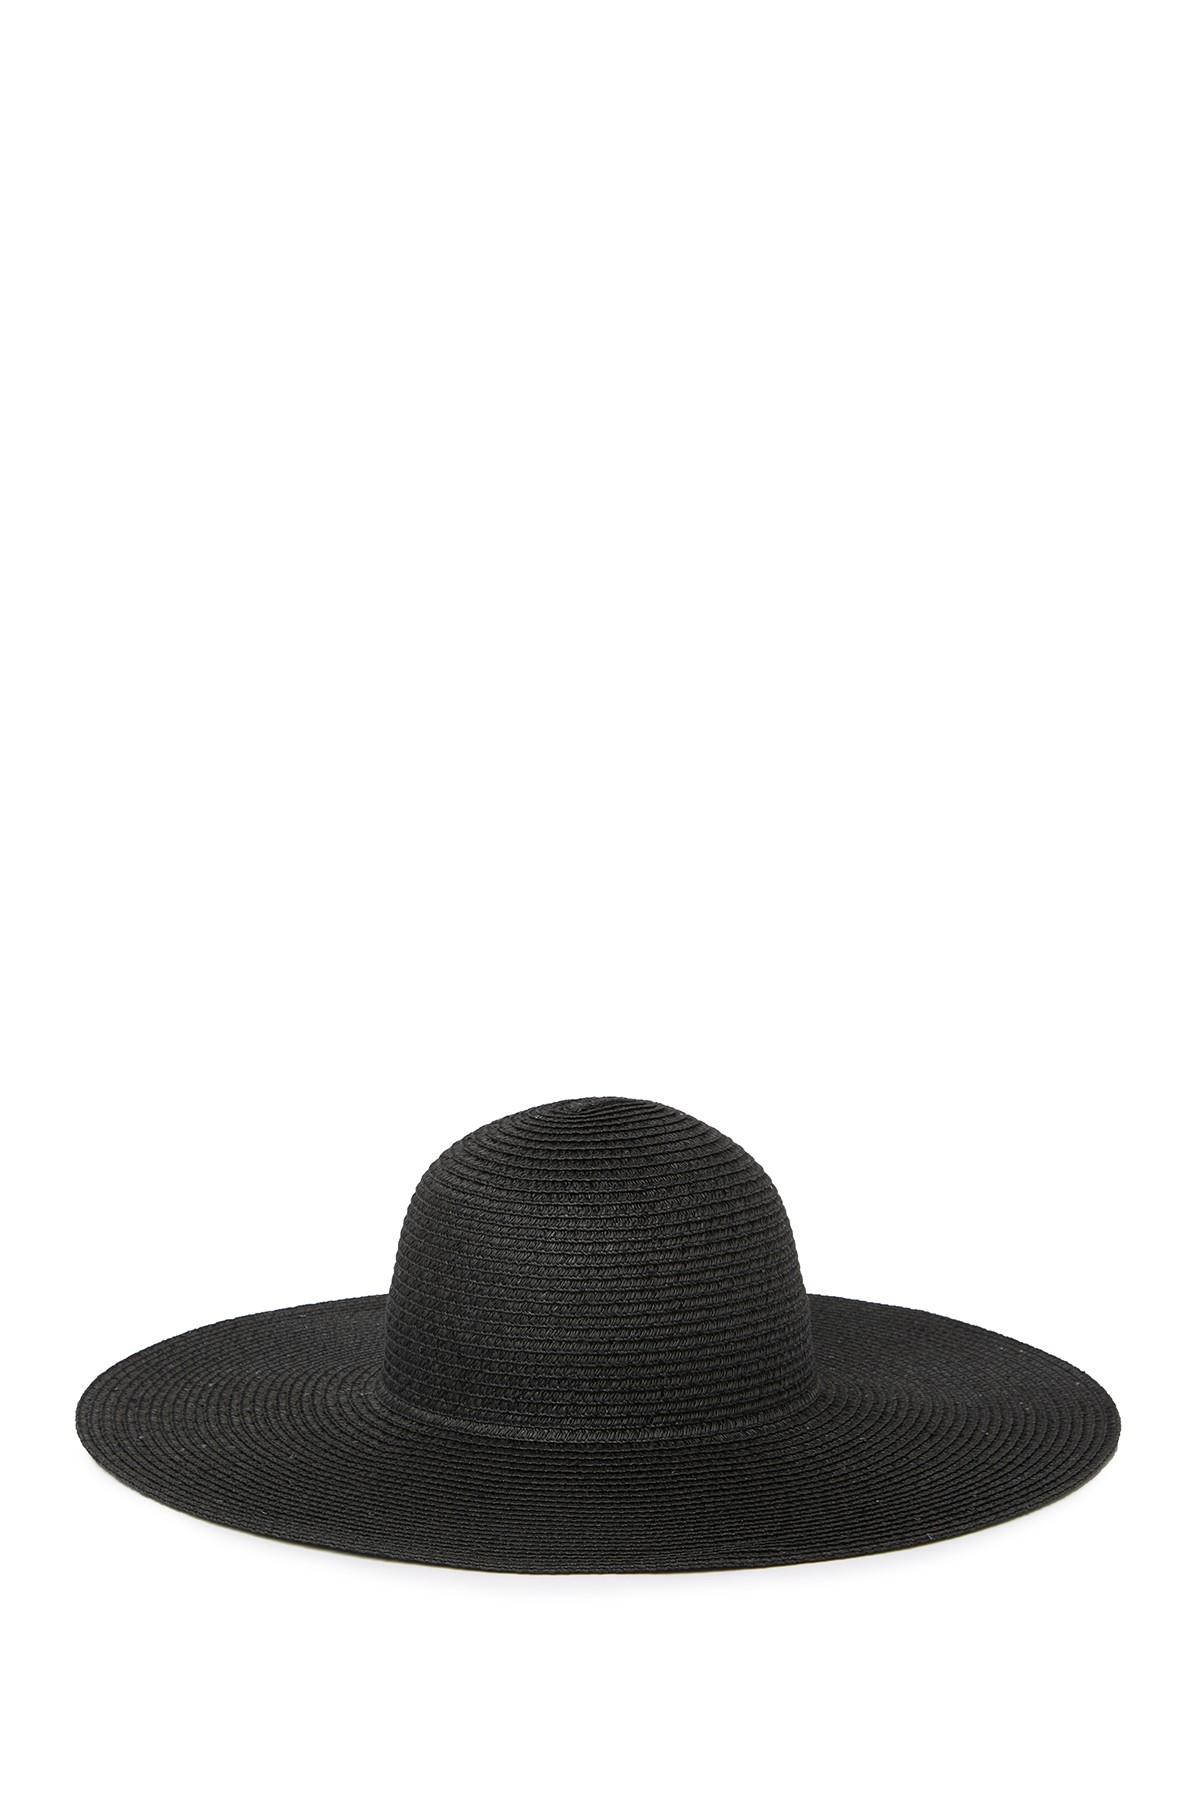 Calvin Klein Sequin Straw Sun Hat in Black | Lyst